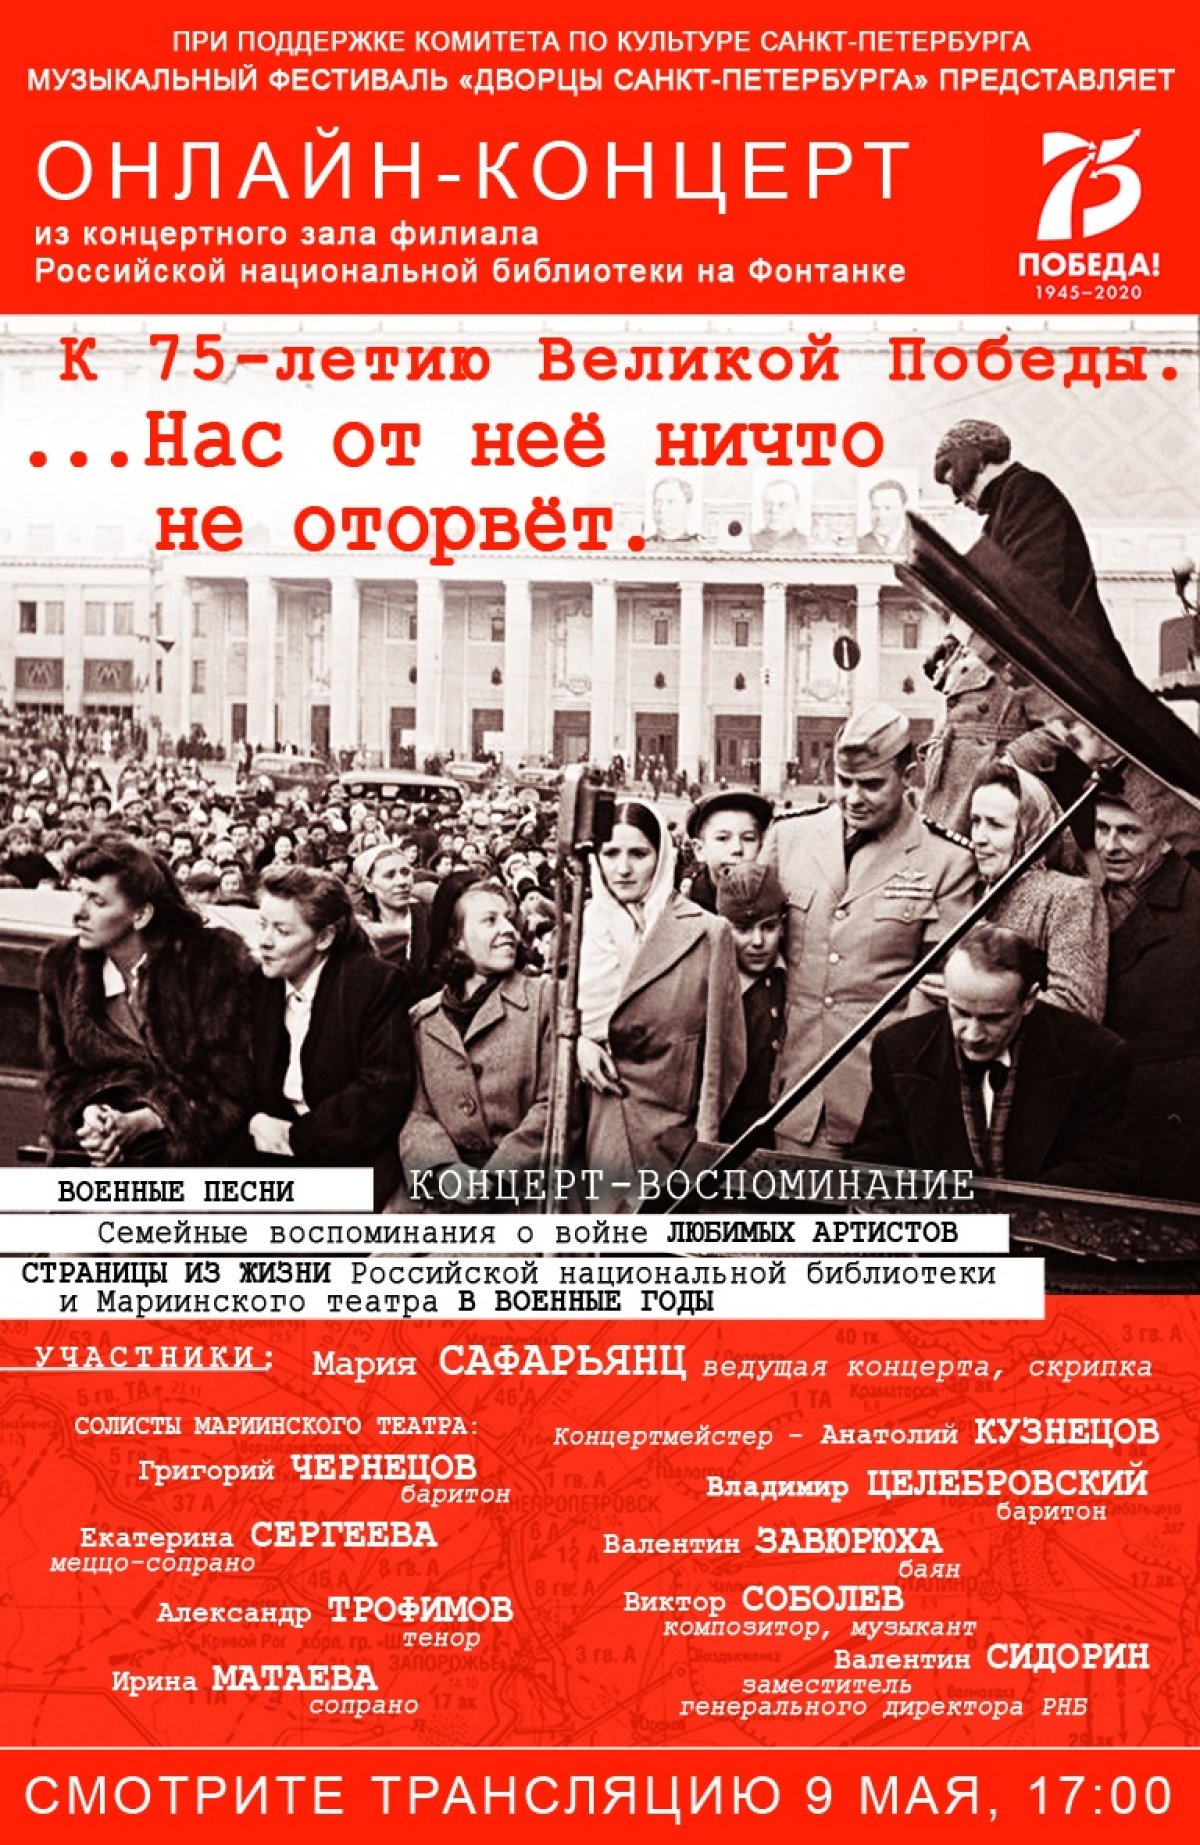 Международный музыкальный фестиваль «Дворцы Санкт-Петербурга» и Российская Национальная библиотека представляют онлайн концерт «К 75-летию Победы. ...Нас от нее ничто не оторвет…» 🎷